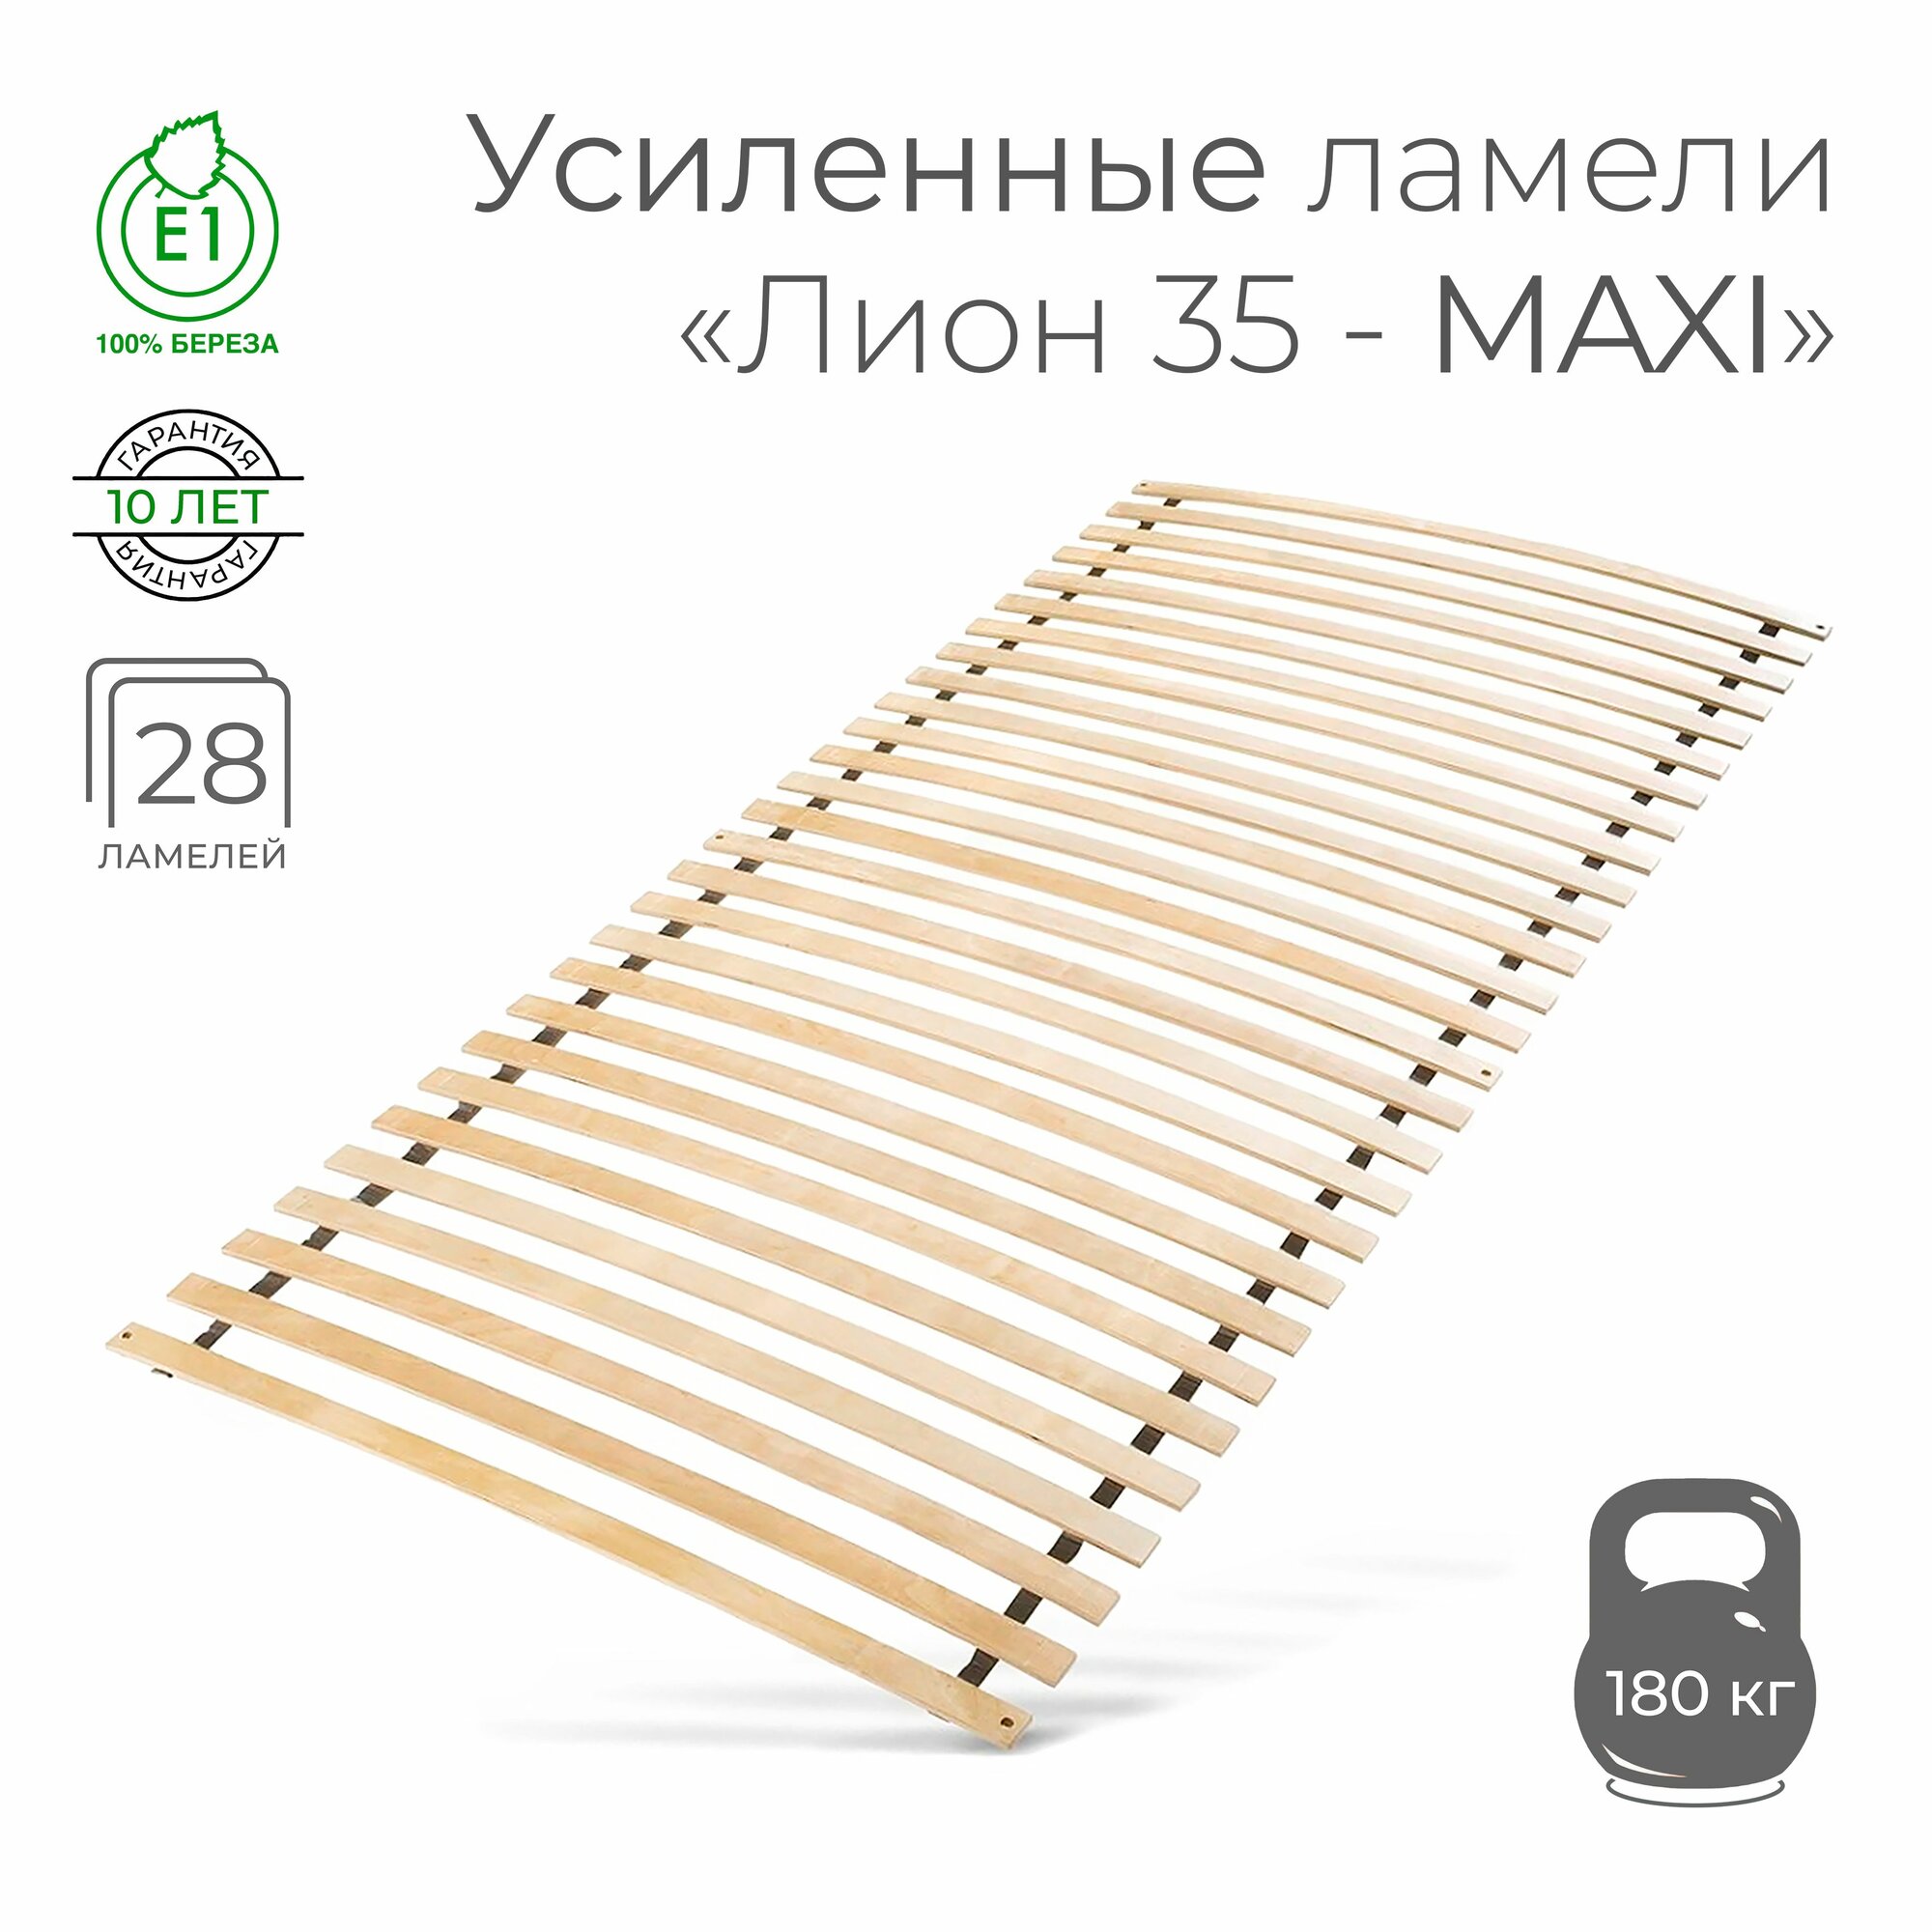 Усиленные ламели "Лион 35 - MAXI", 90х200 см. (кроватное основание 28 ламелей толщиной 10 мм, узкие ламели на ленте, ортопедическое реечное дно кровати)